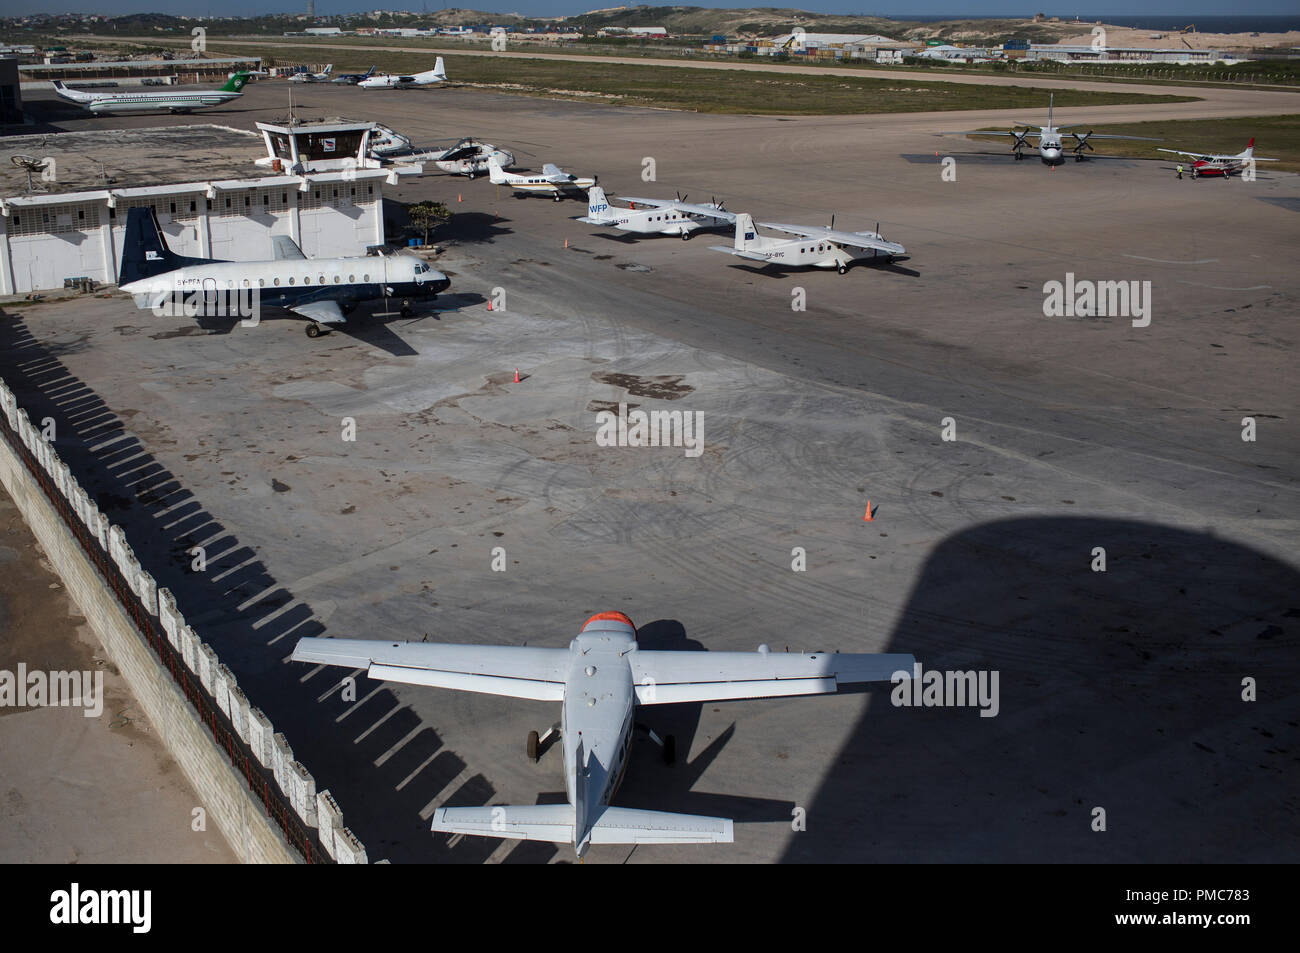 Avion est vu sur le tarmac de l'aéroport intérieur d'Aden Abdulle la Mission de l'Union africaine en Somalie (AMISOM) à Mogadiscio, en Somalie, le 9 août Banque D'Images